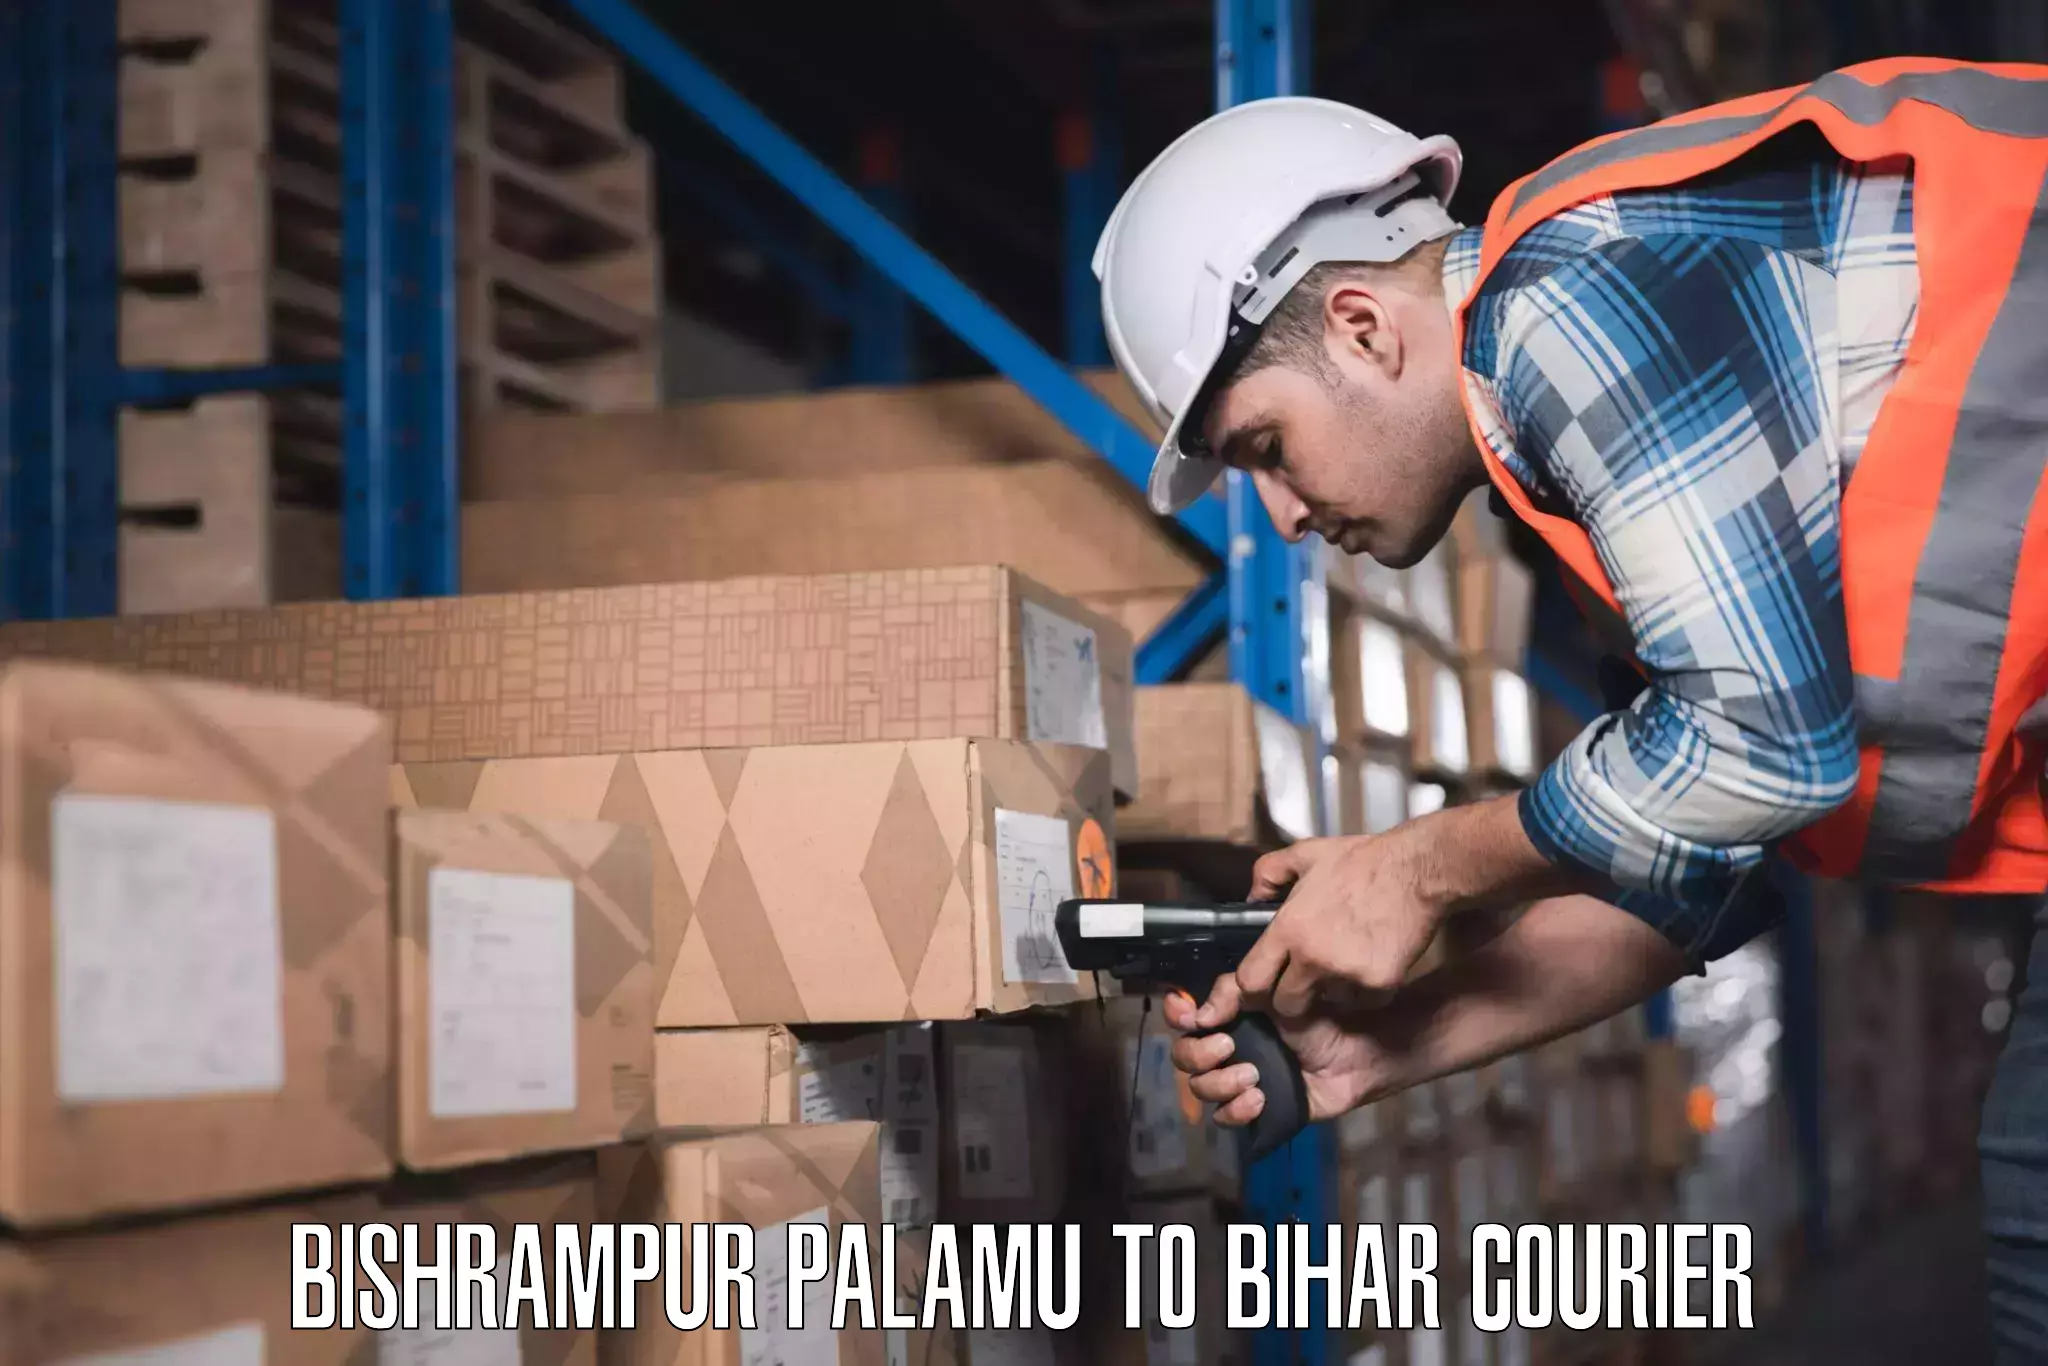 Luggage shipment processing in Bishrampur Palamu to Jhajha